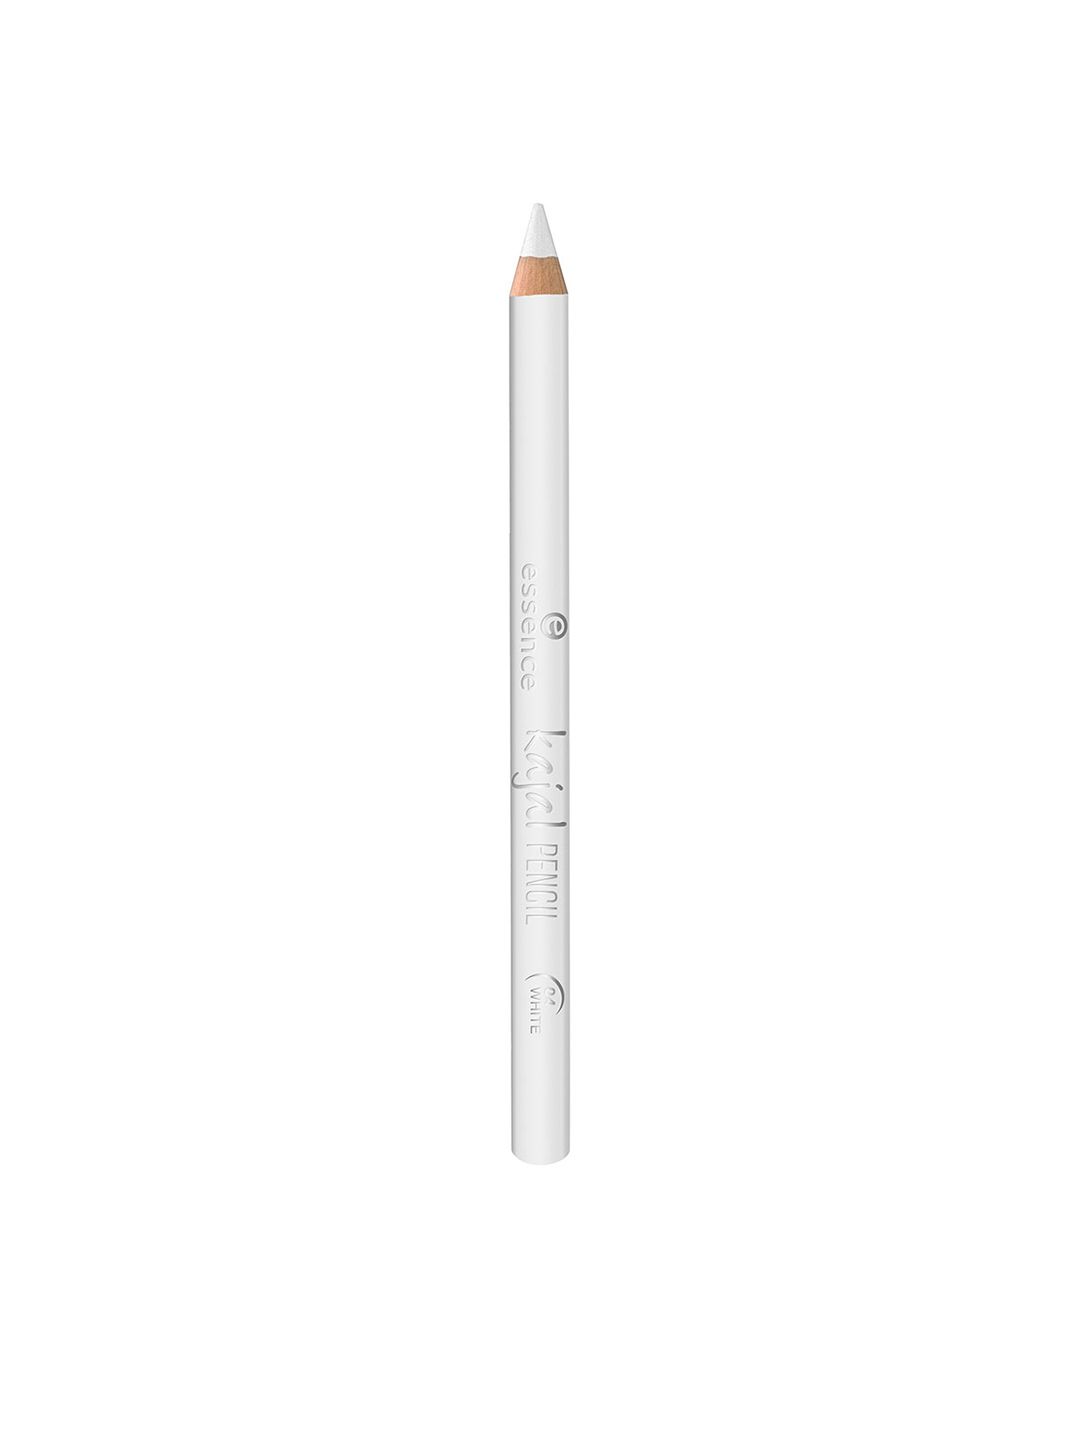 Essence 04 White Kajal Pencil 1 g Price in India